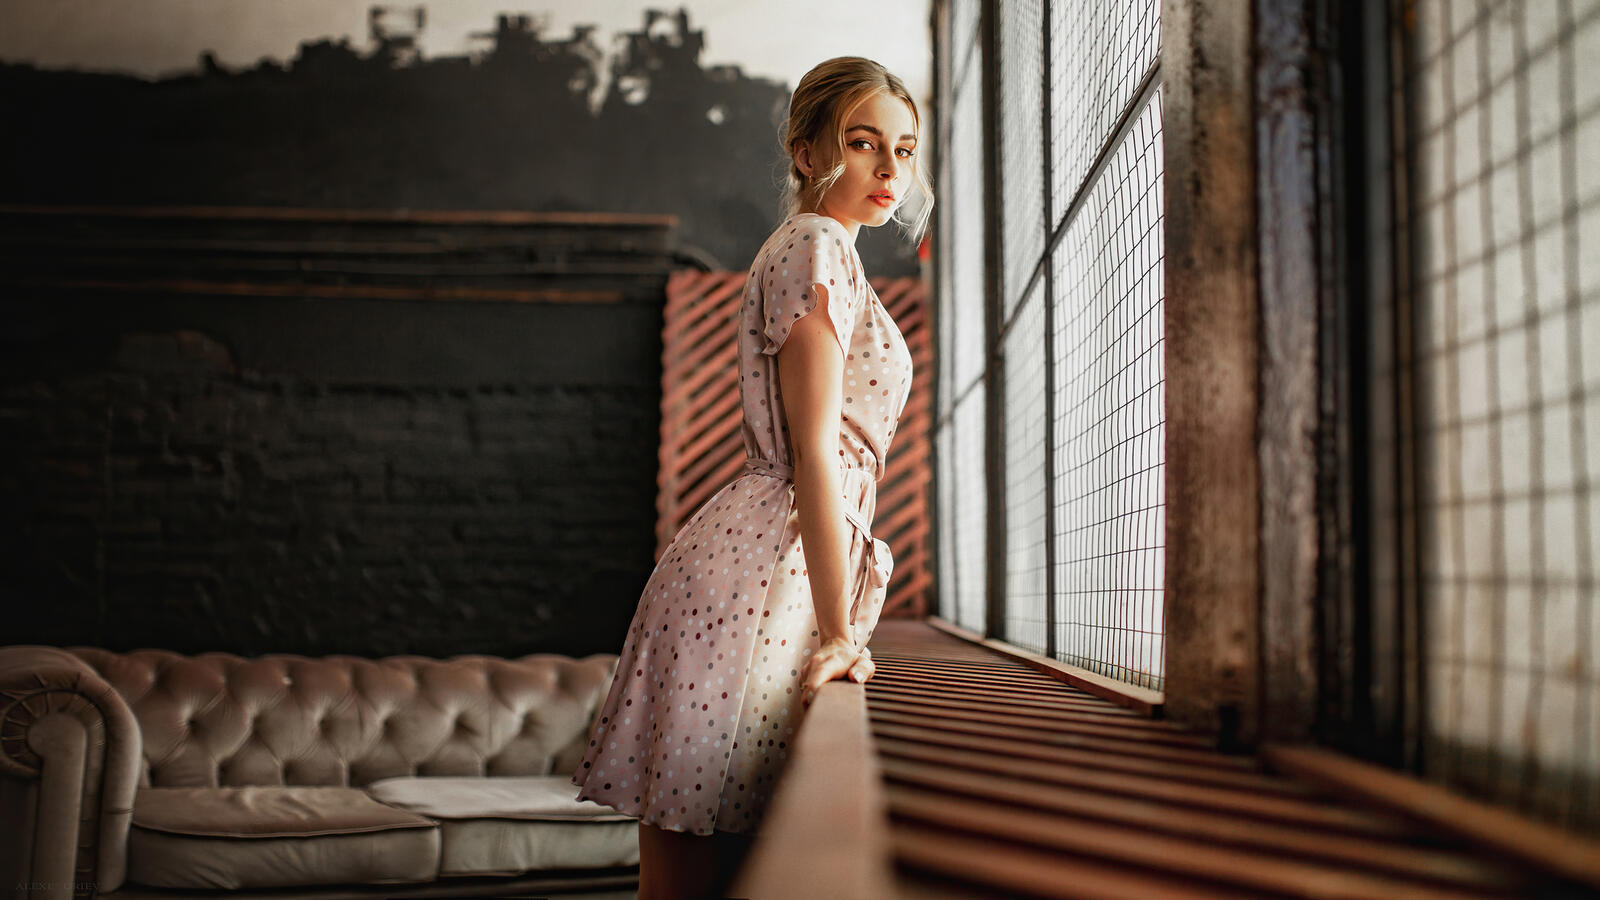 Бесплатное фото Молодая девушка в пятнистом платье стоит у окна